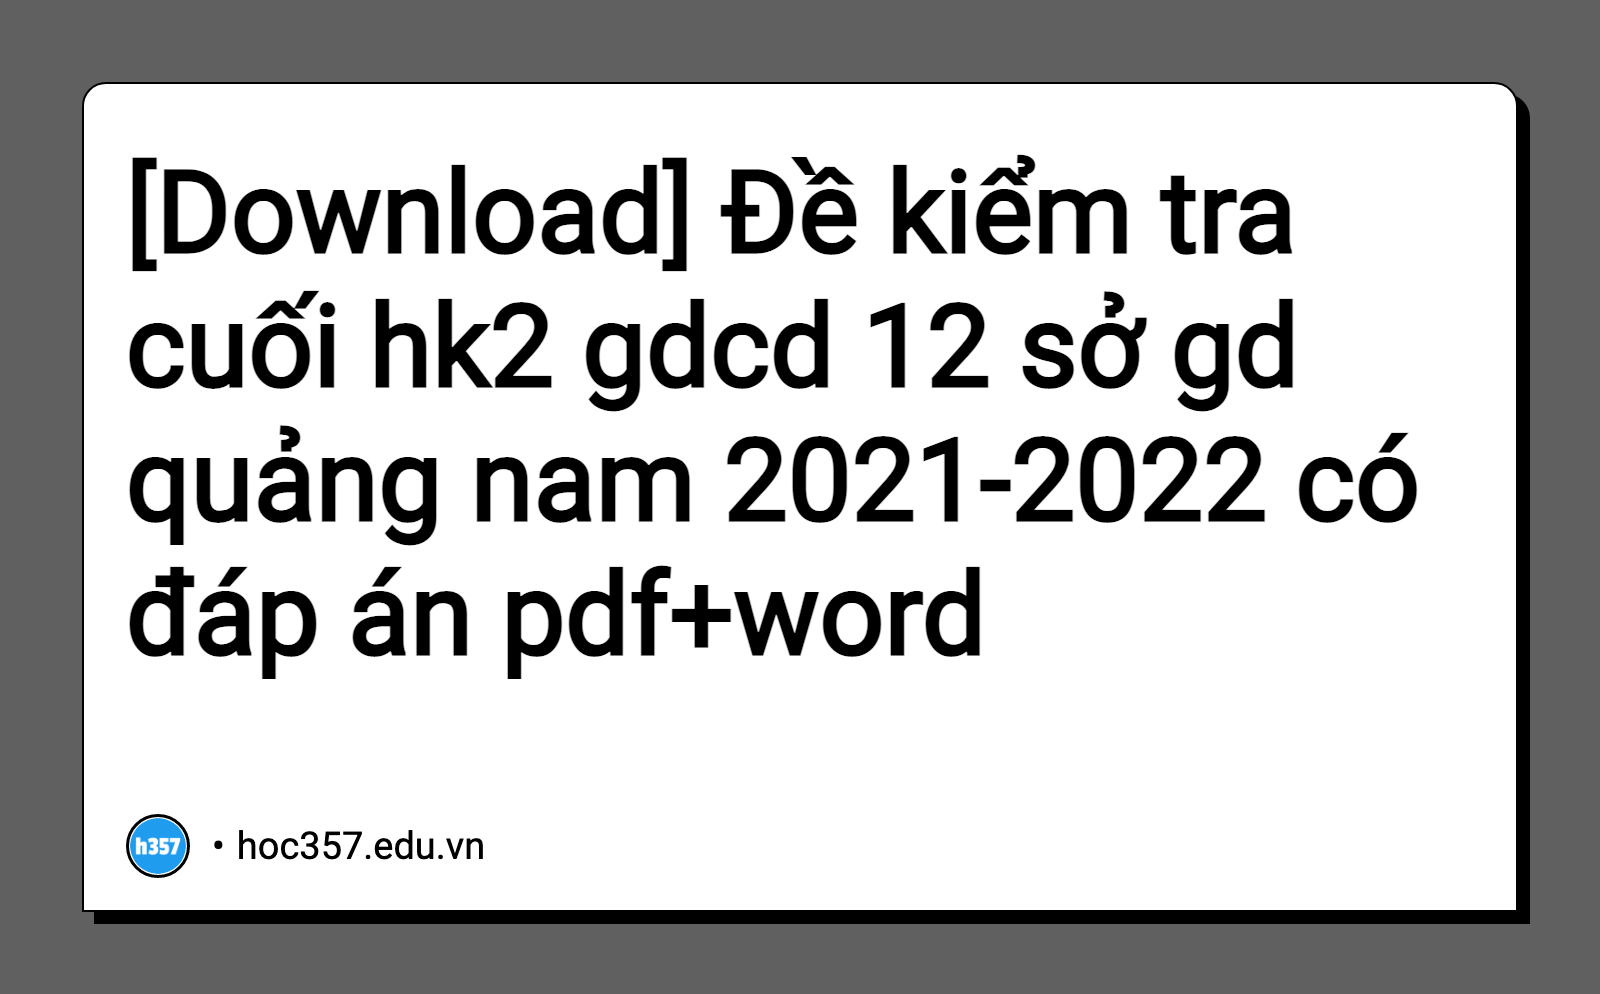 Hình minh họa Đề kiểm tra cuối hk2 gdcd 12 sở gd quảng nam 2021-2022 có đáp án